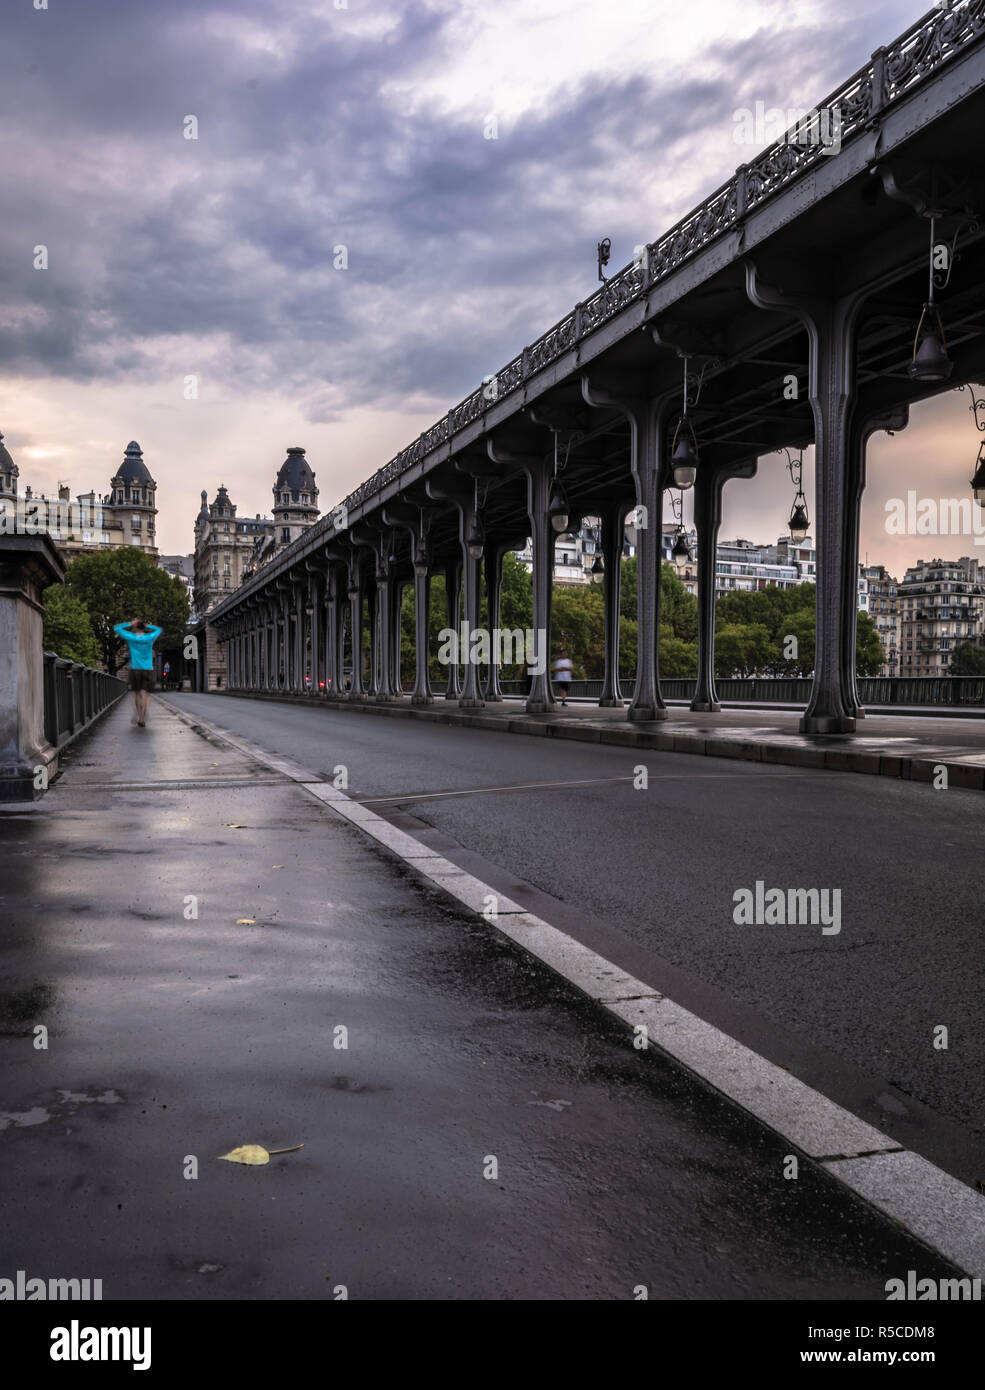 Les jeunes balades touristiques par pont de pont de métro Bir Hakeim paris france paris france pendant l'été avec ciel couvert de nuages épais Banque D'Images